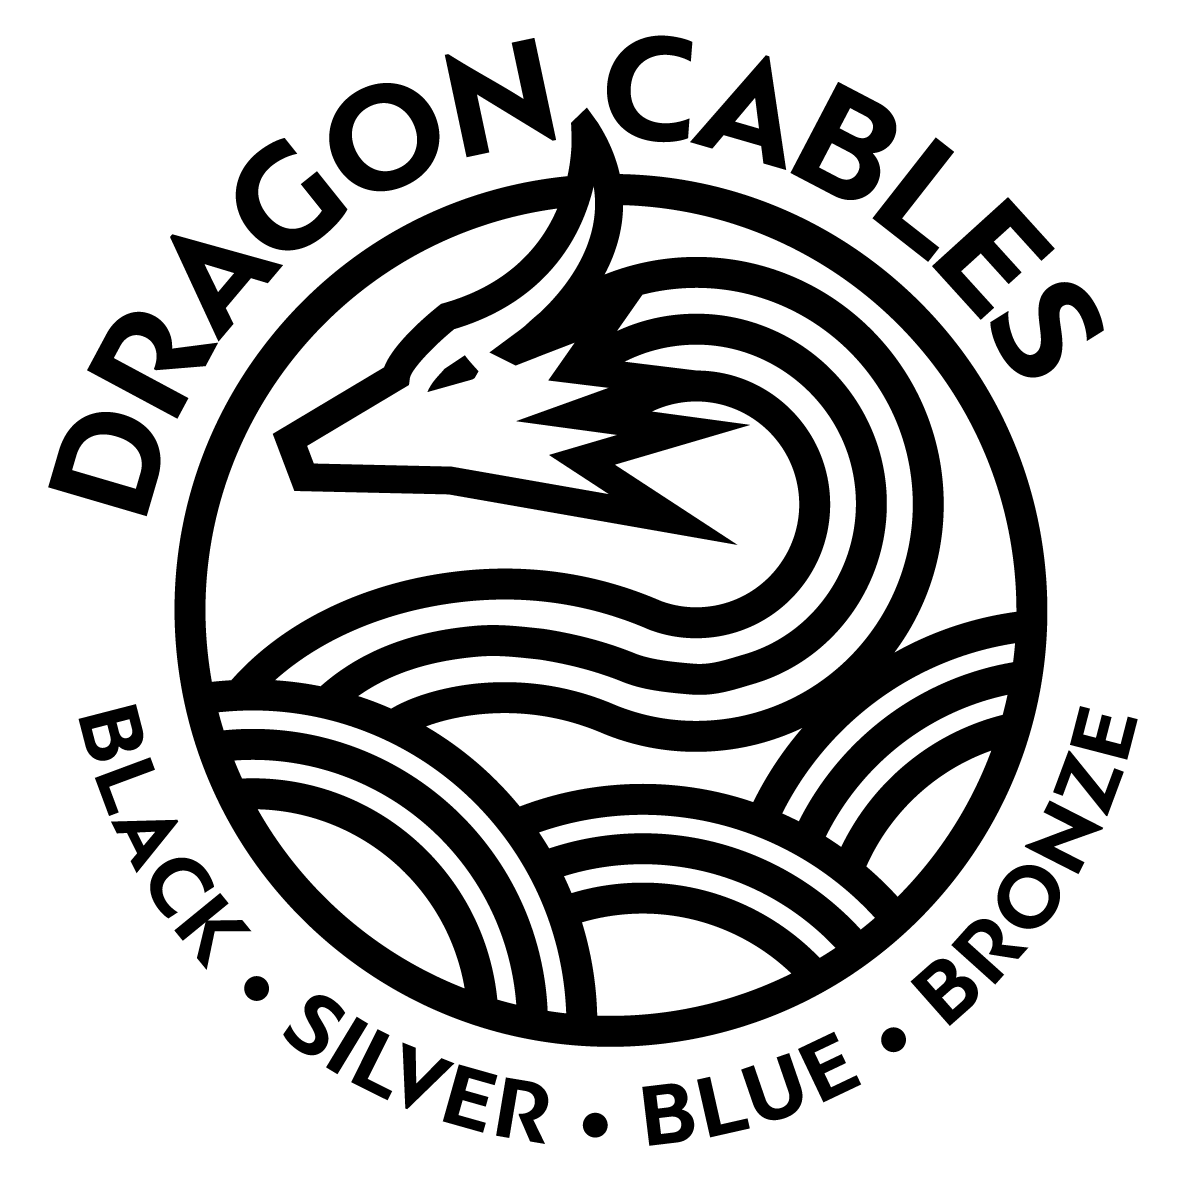 Dragon Cable logo